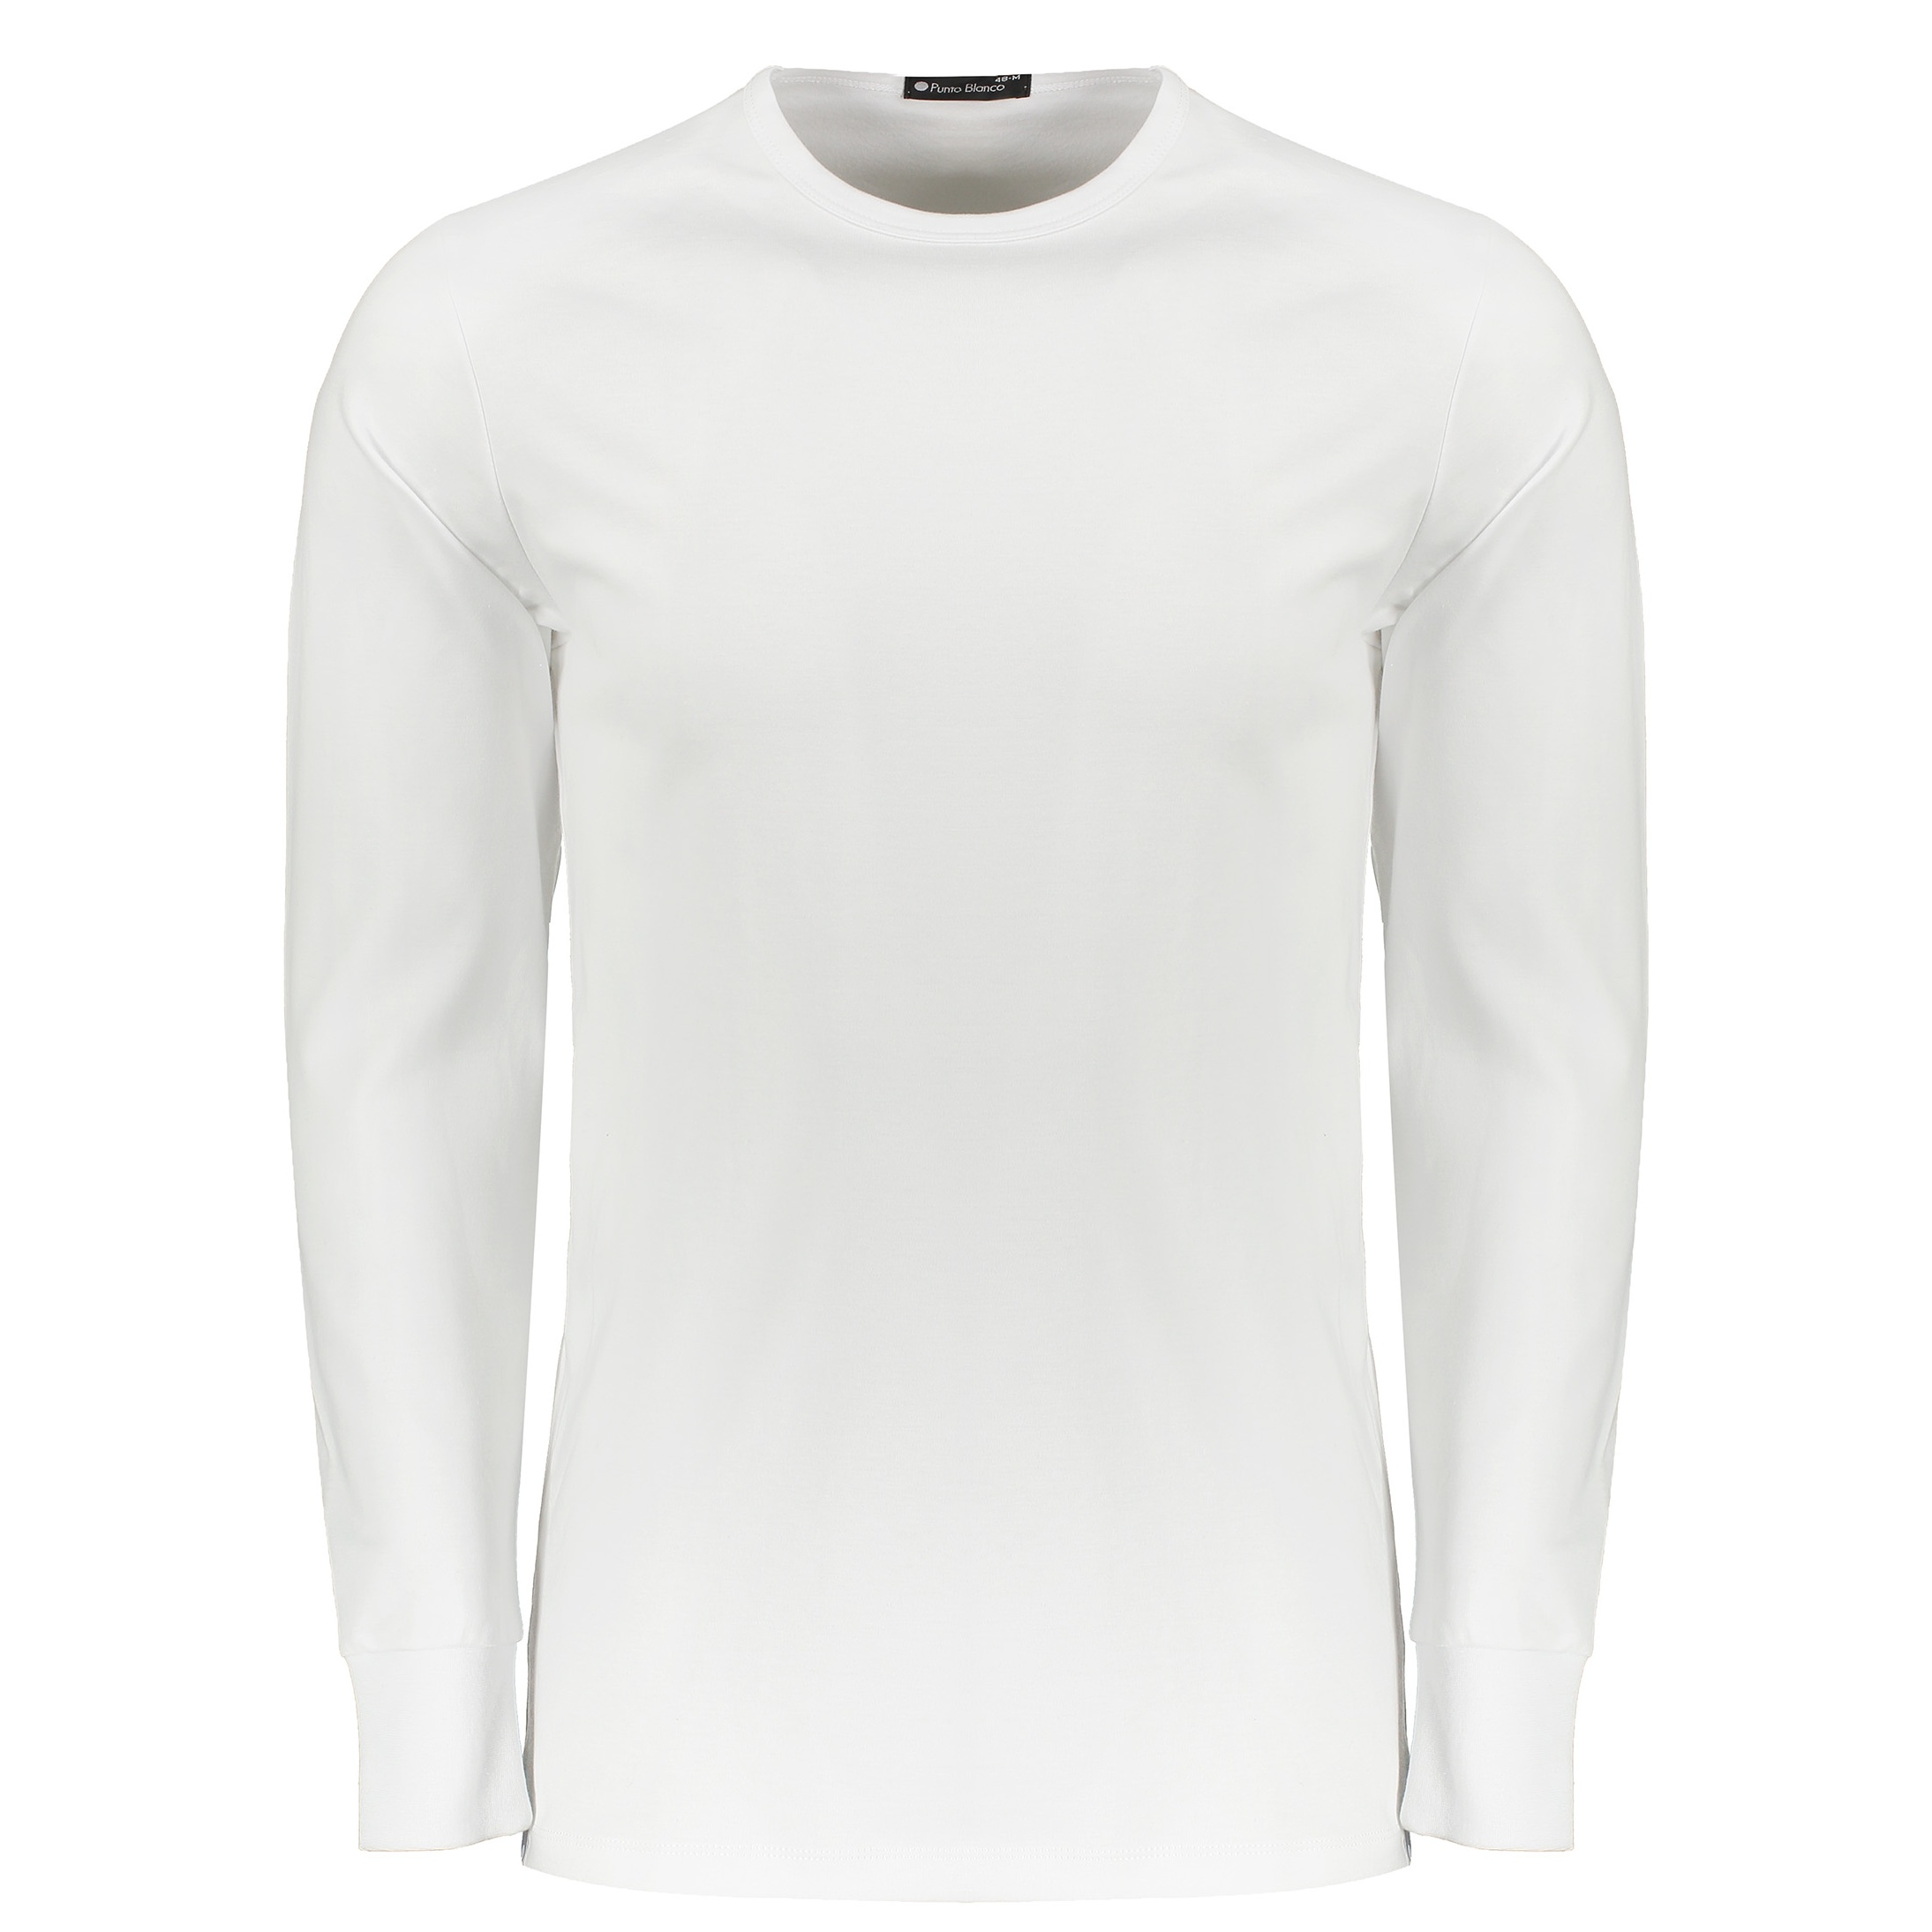 نکته خرید - قیمت روز تی شرت راحتی مردانه پونتو بلانکو کد 33186-20-000 خرید